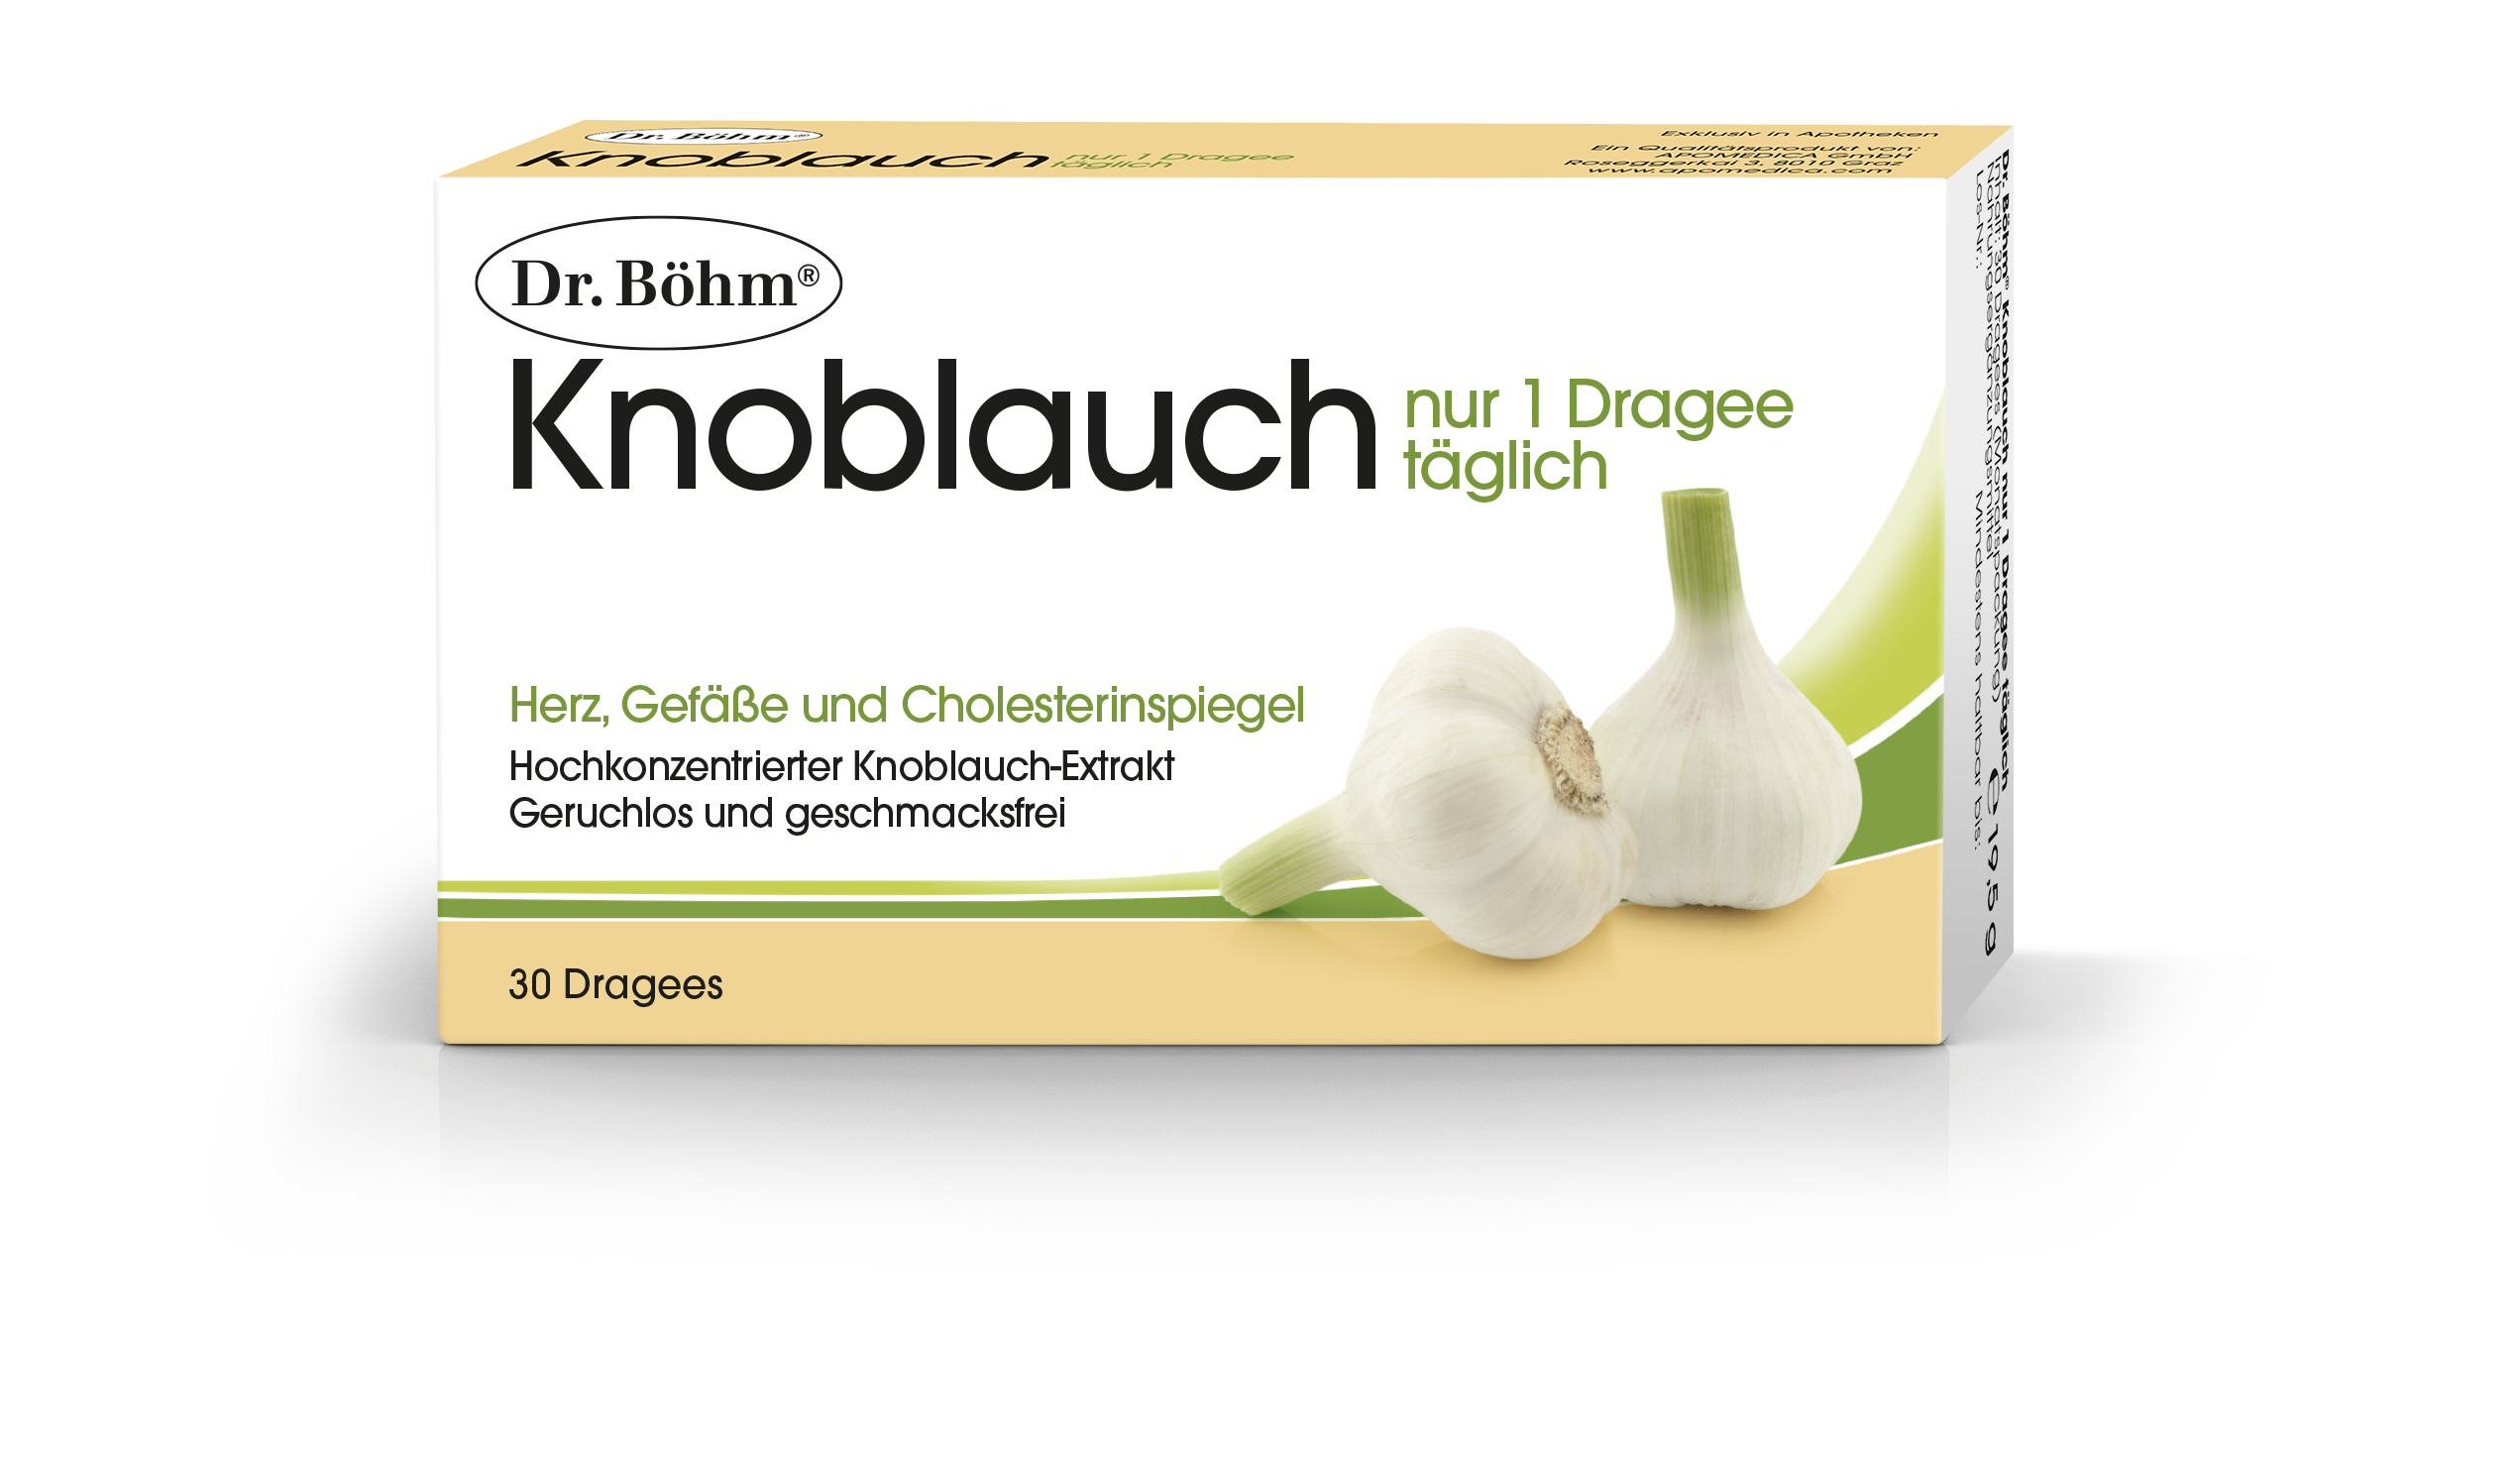 Dr. Böhm Knoblauch 1 Dragee täglich